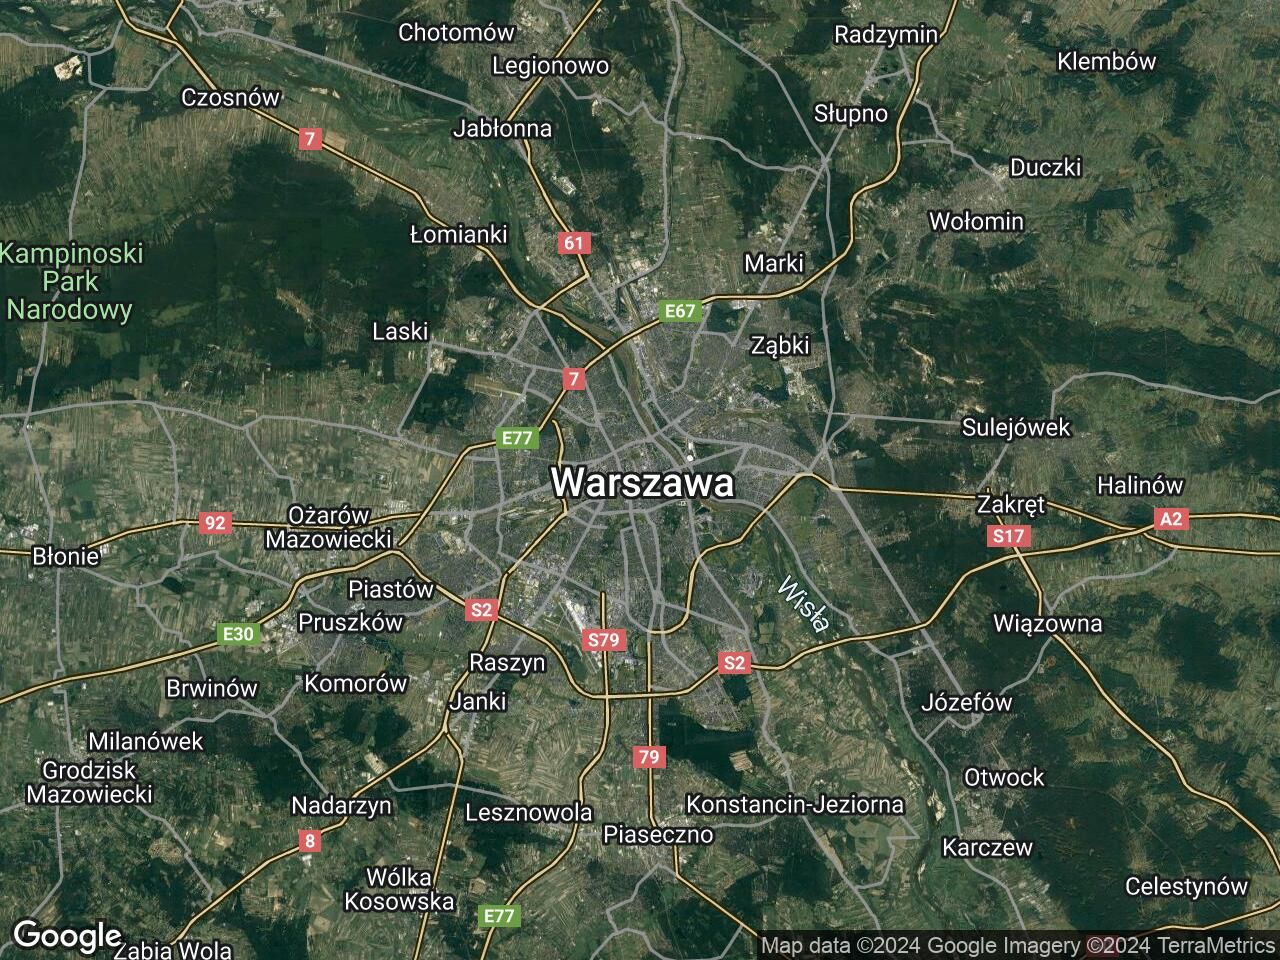 Lokal Warszawa Śródmieście